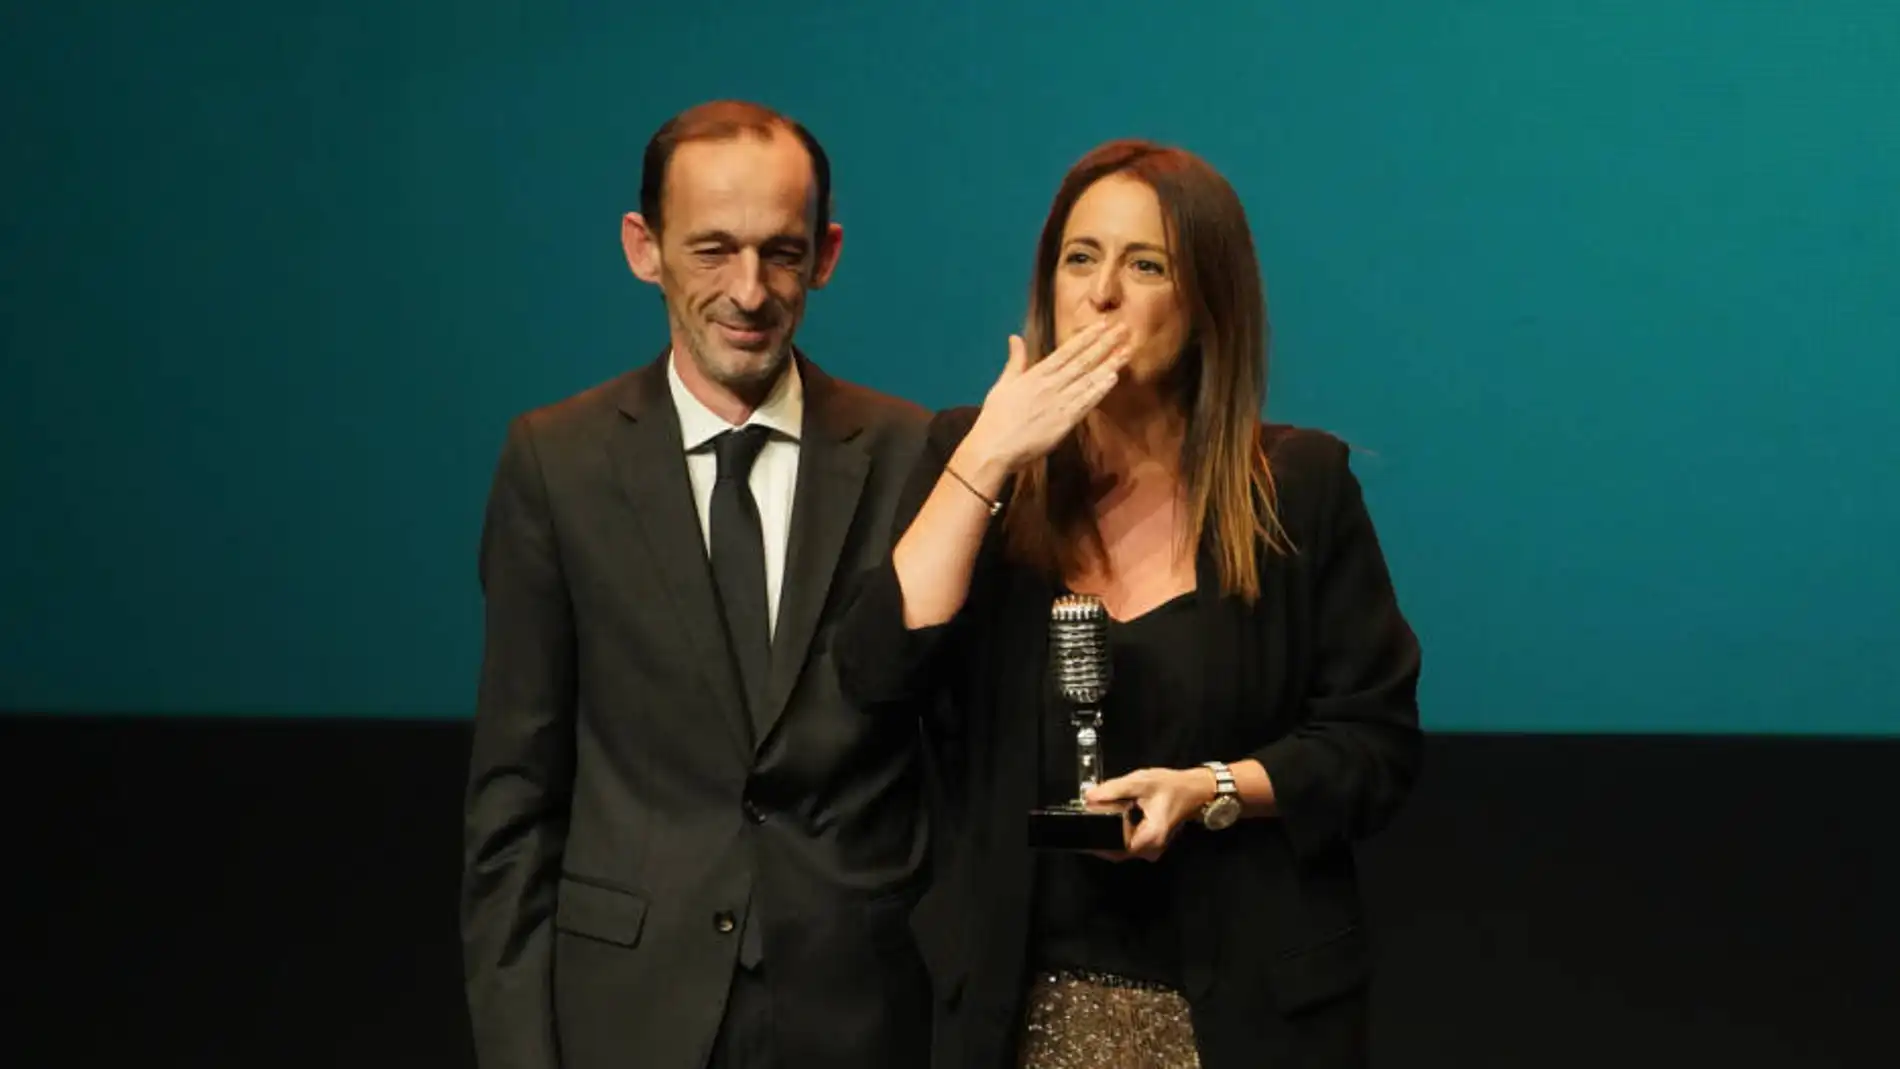 Teika recibe el premio de deportes en los Premios Onda Cero Valencia